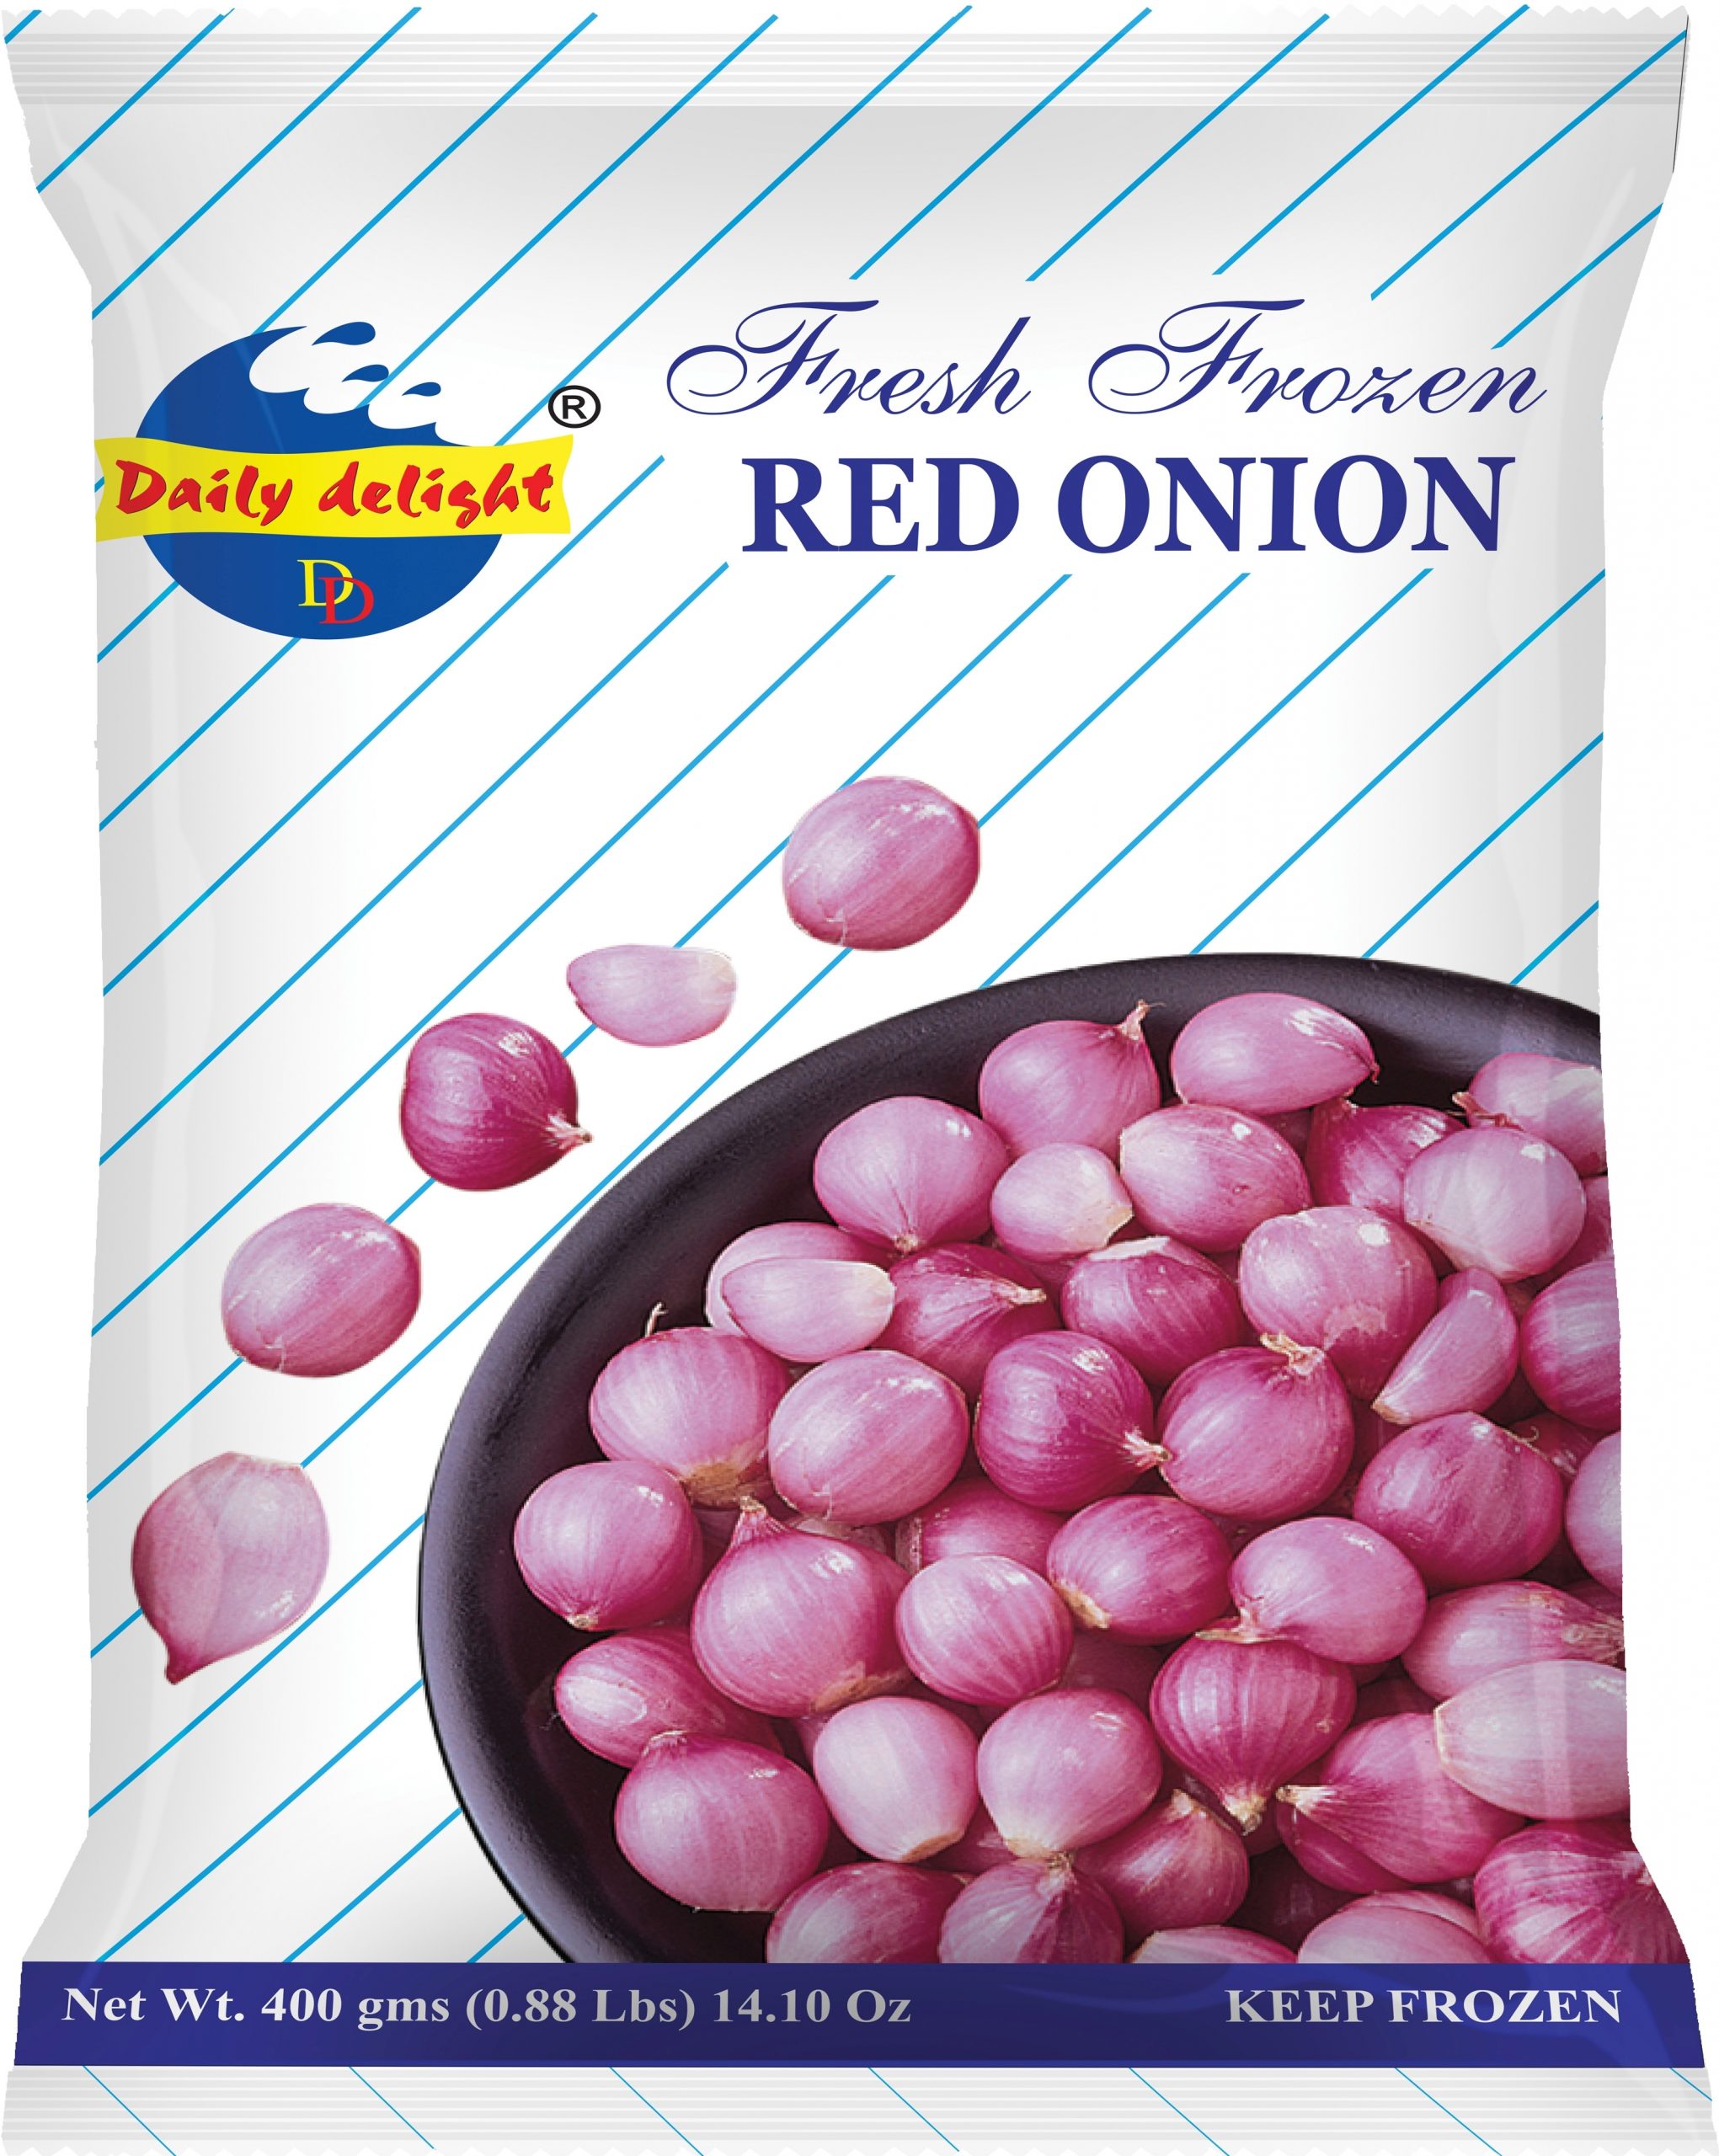 DD Red Onion 400g